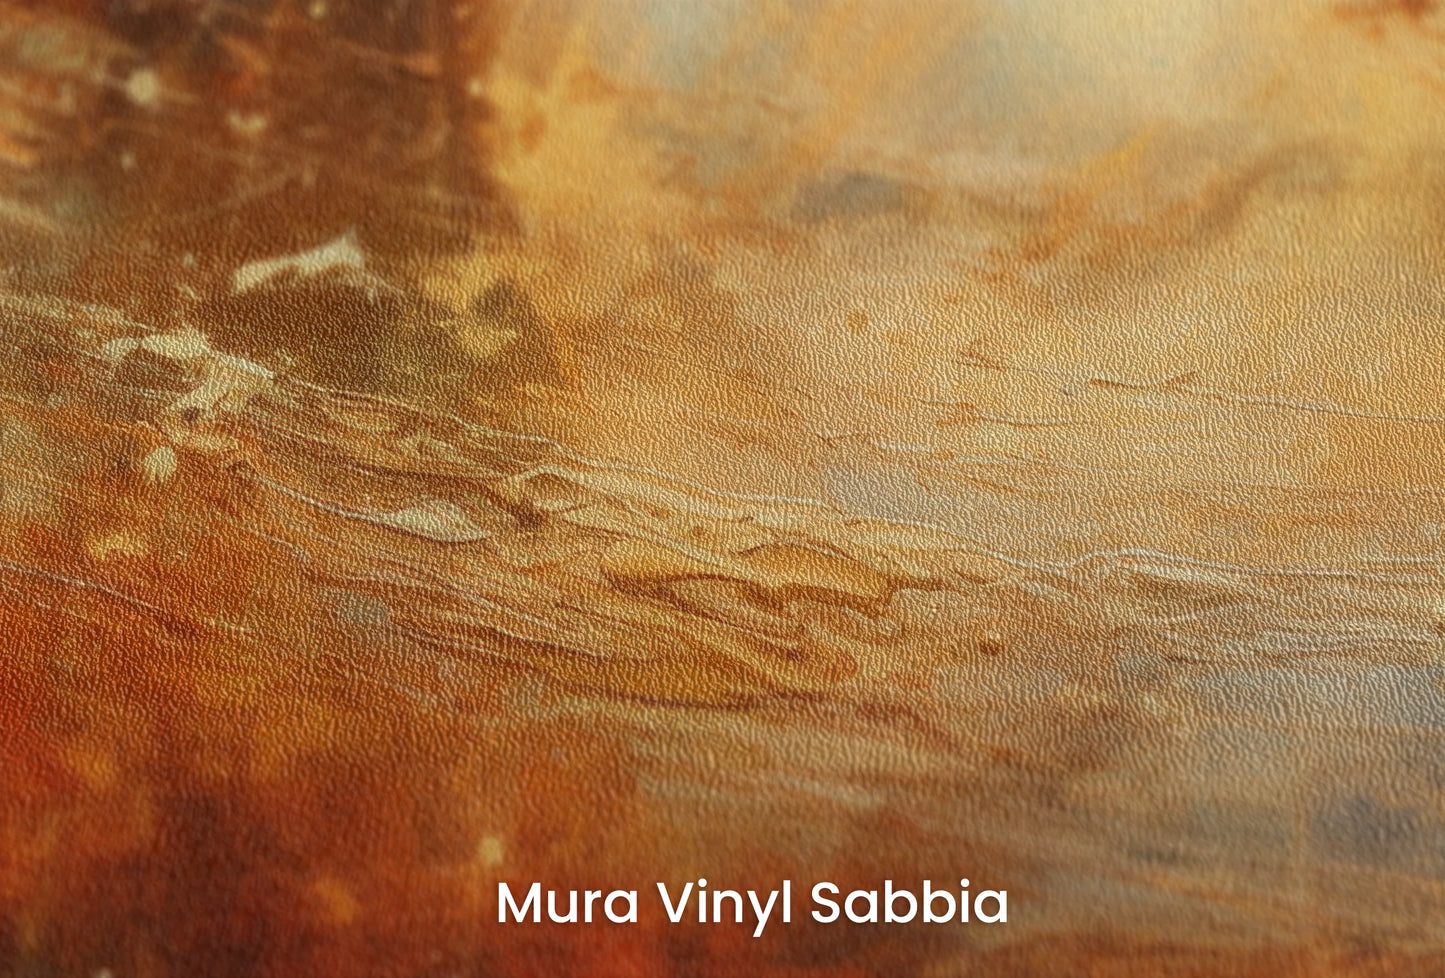 Zbliżenie na artystyczną fototapetę o nazwie Saturn's Embrace na podłożu Mura Vinyl Sabbia struktura grubego ziarna piasku.